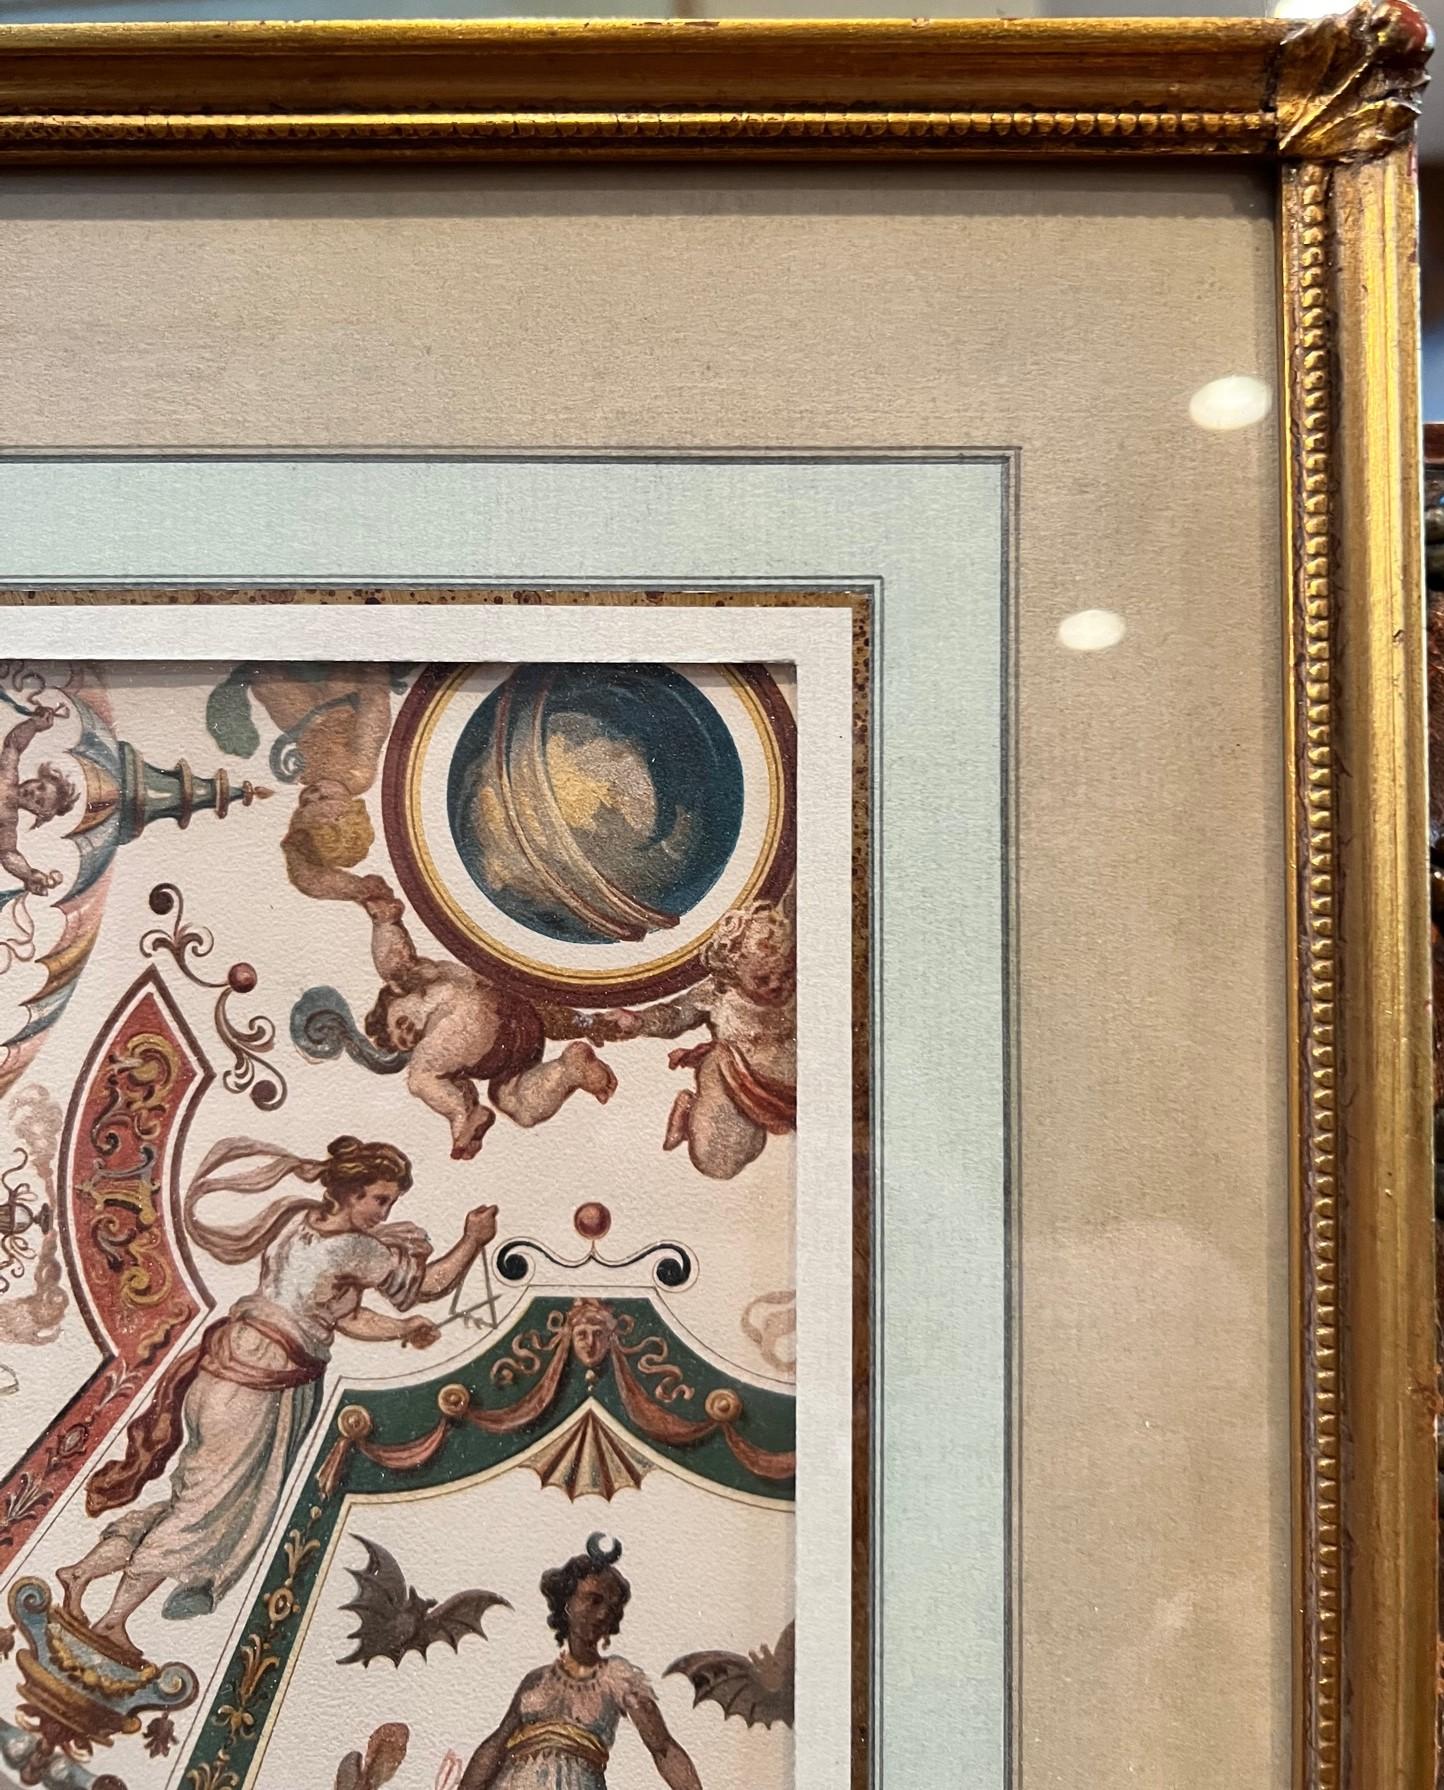 Impression d'architecture allemande ancienne sur papier épais montrant une illustration d'une partie d'une peinture de plafond de la Galerie des Offices, Florence, XVIe siècle (Uffizien Deckenmalerei (XVI Jahrh), Florenz). Cette chromolithographie à